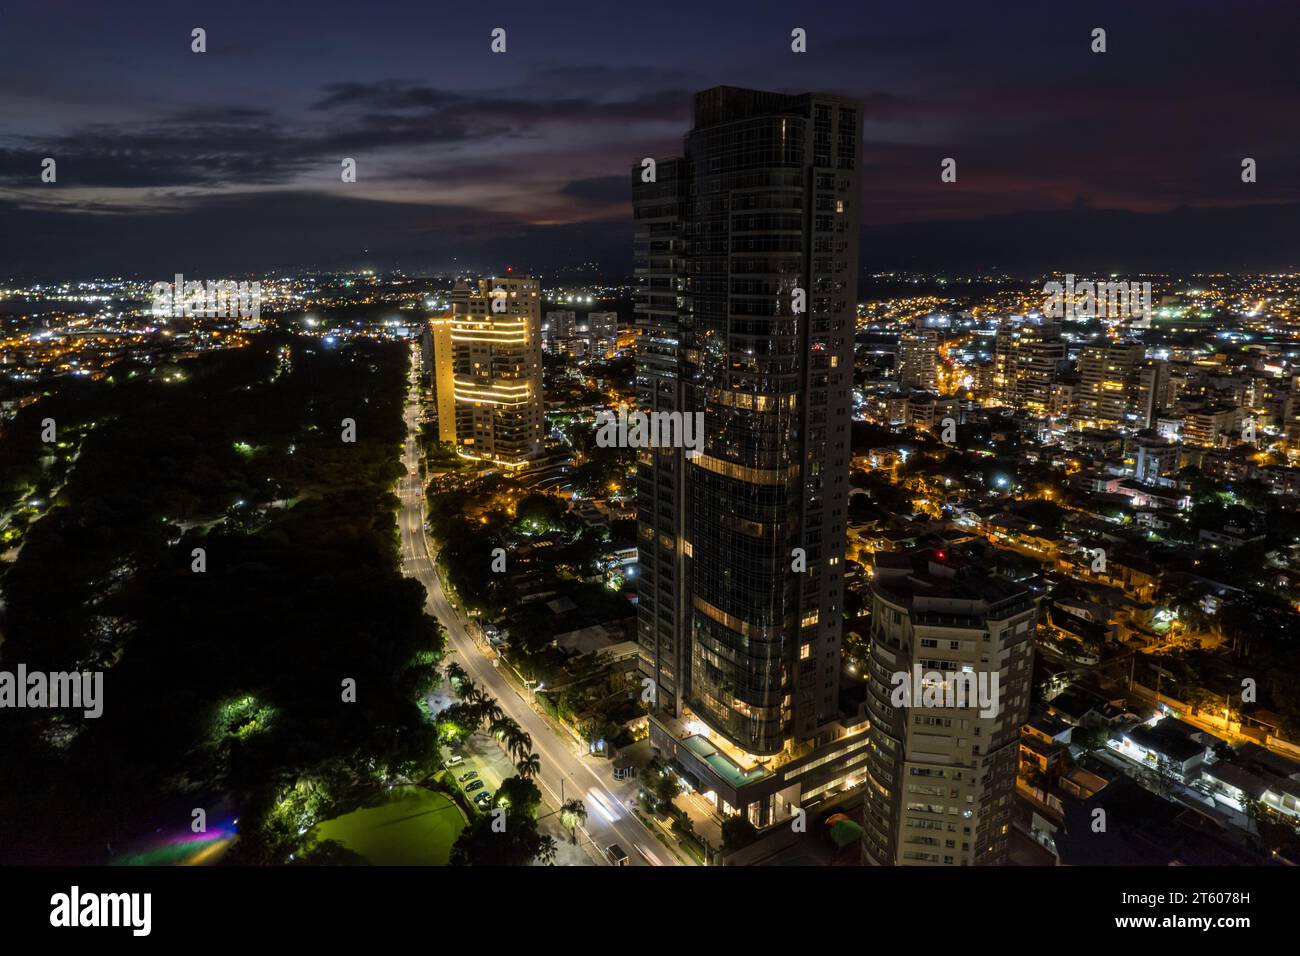 Aerial view Santo Domingo, Capital Of Dominican Republic, its beautiful streets and buildings, la Fuente Centro de los Heroes, the Pabellón de heroes Stock Photo